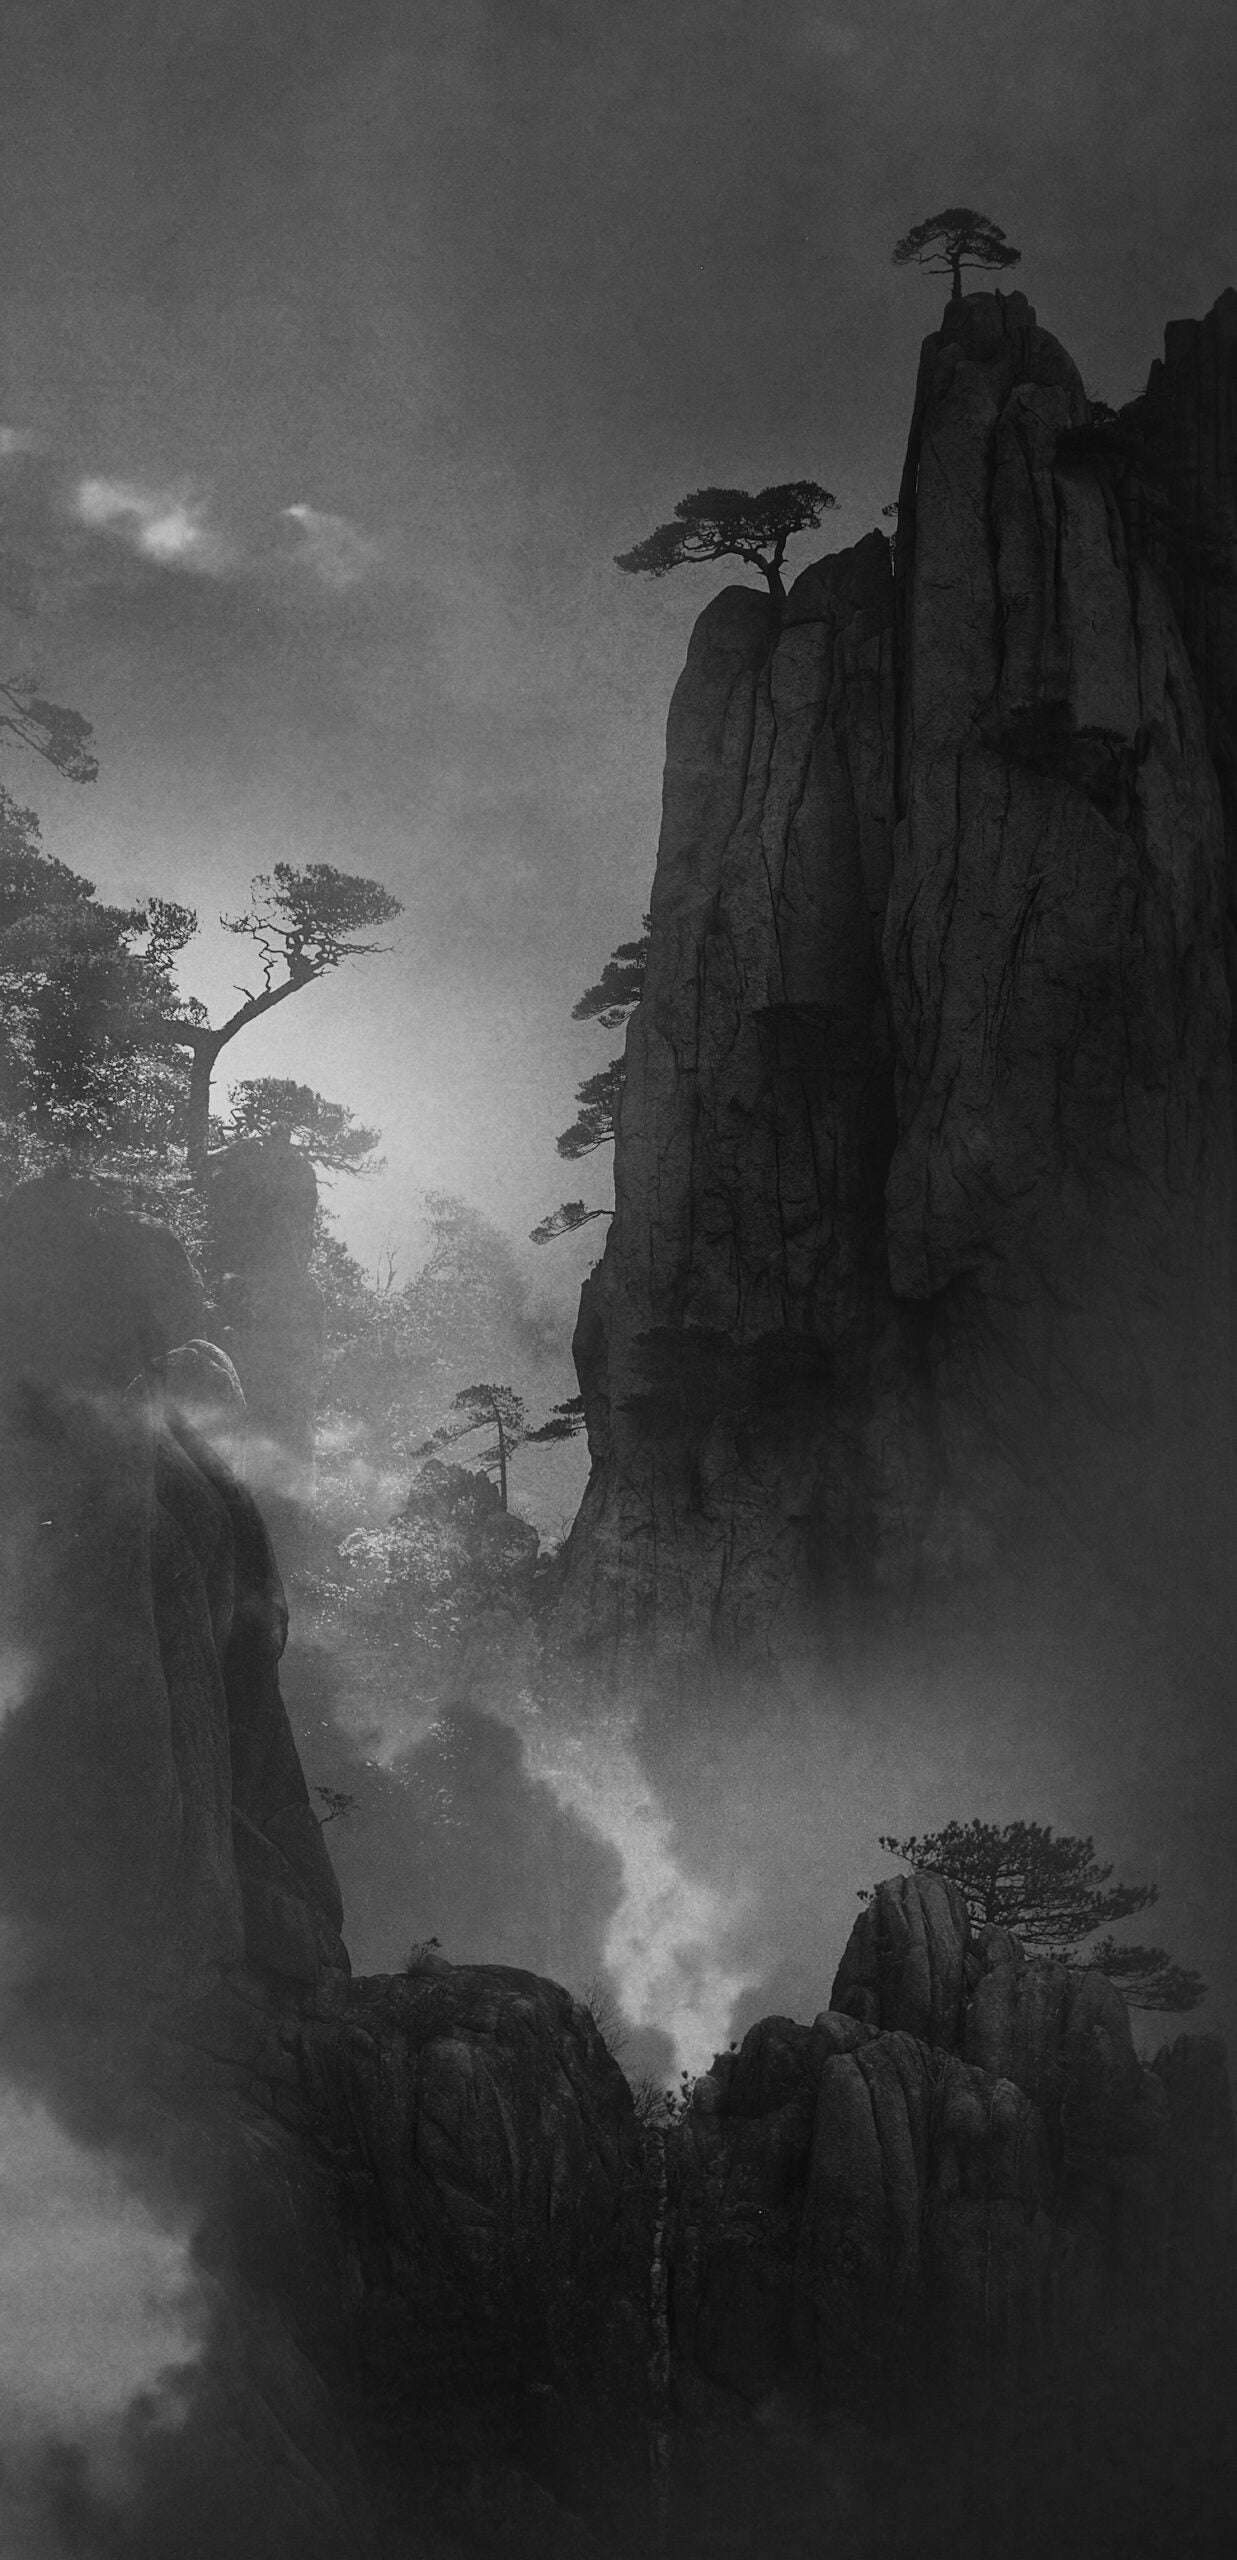 Esta foto de paisagem em preto e branco foi criada pelo fotógrafo chinês Honghua Shi, que venceu na categoria Paisagem / Natureza.